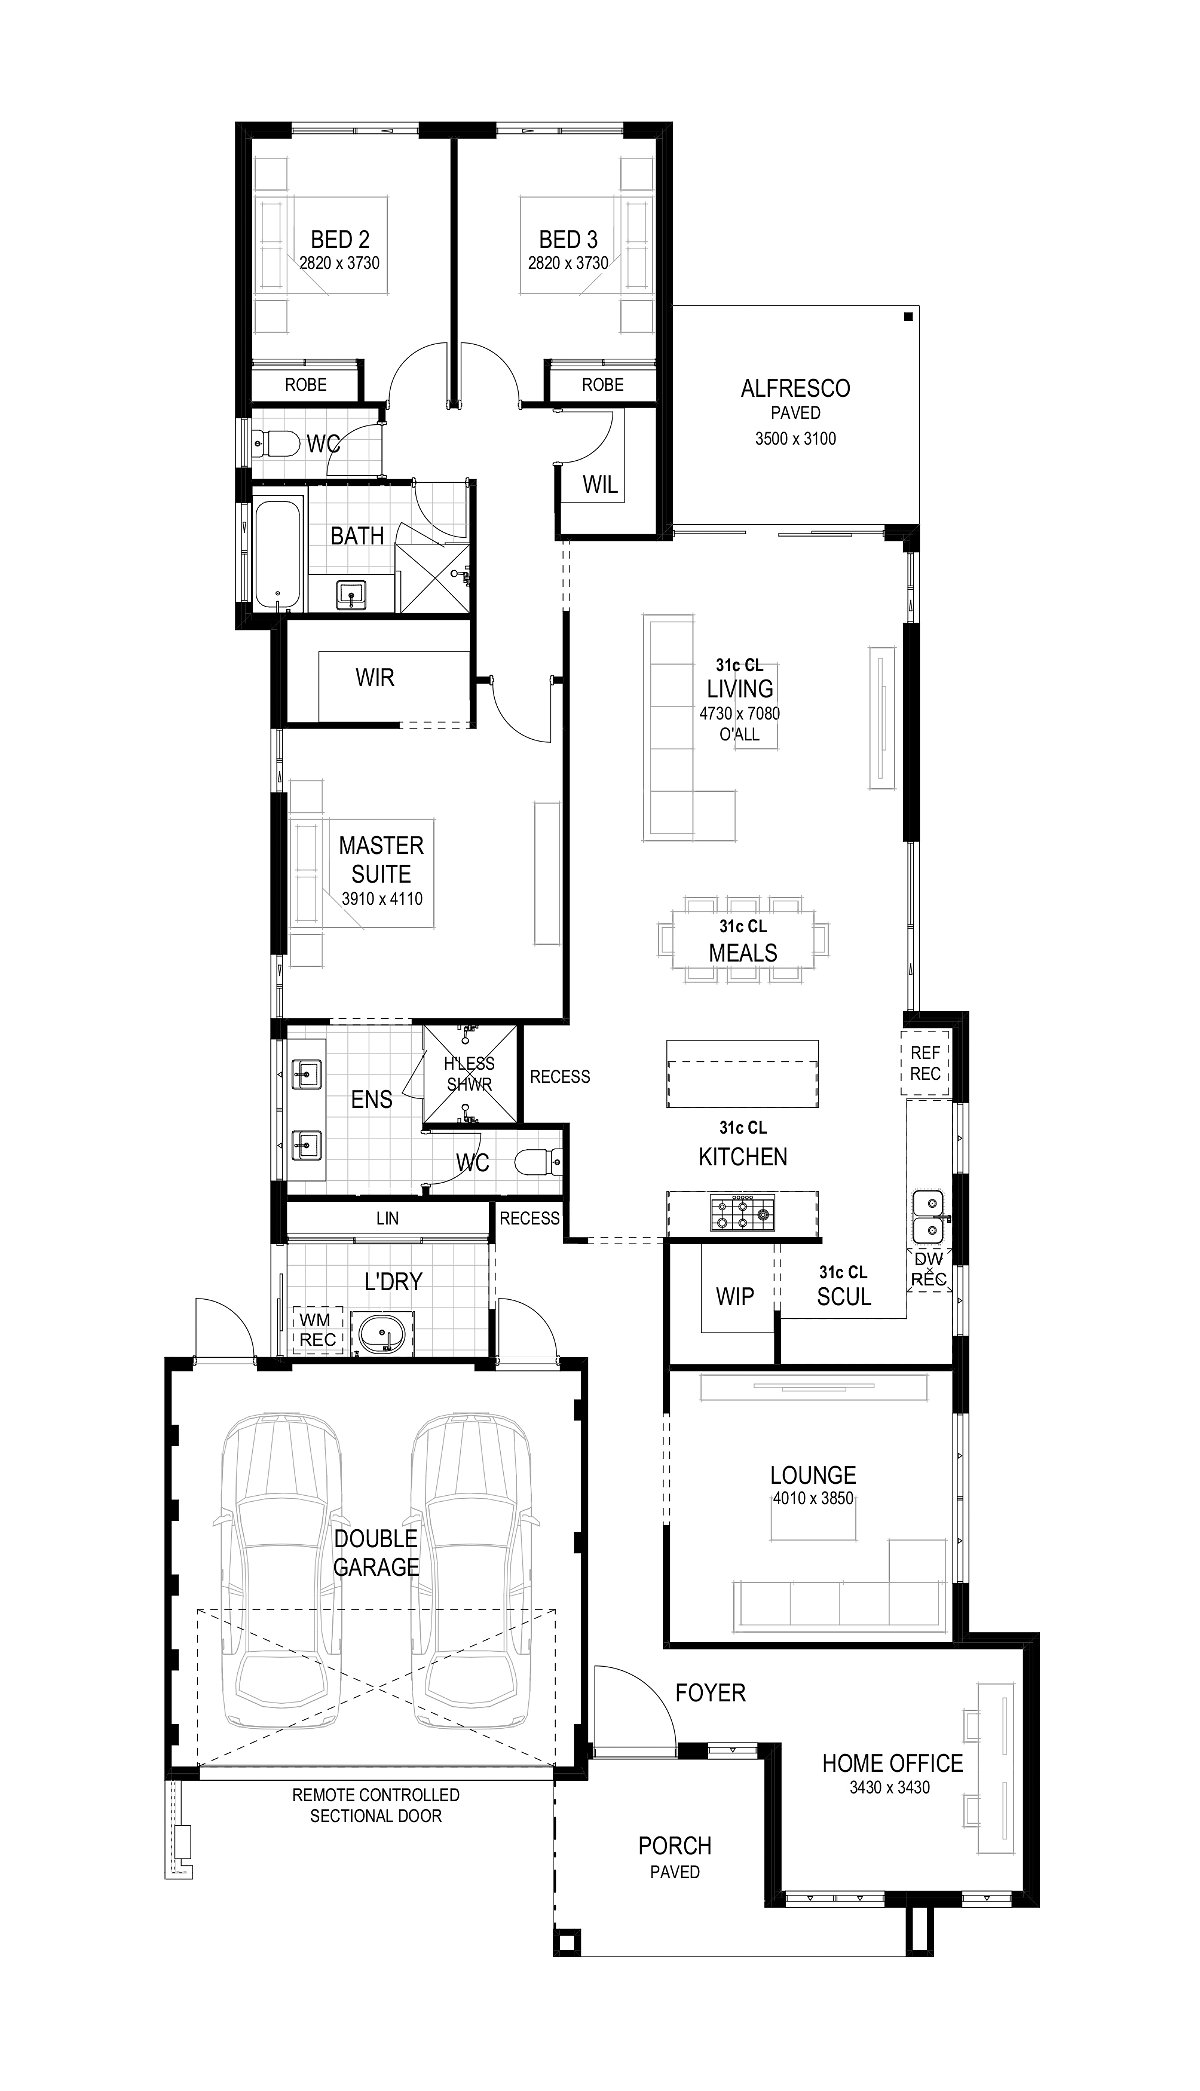 Plunkett Homes - Avenue | Hamptons - Floorplan - 202403 Plk The Avenue Floorplan Hamptons Luxe